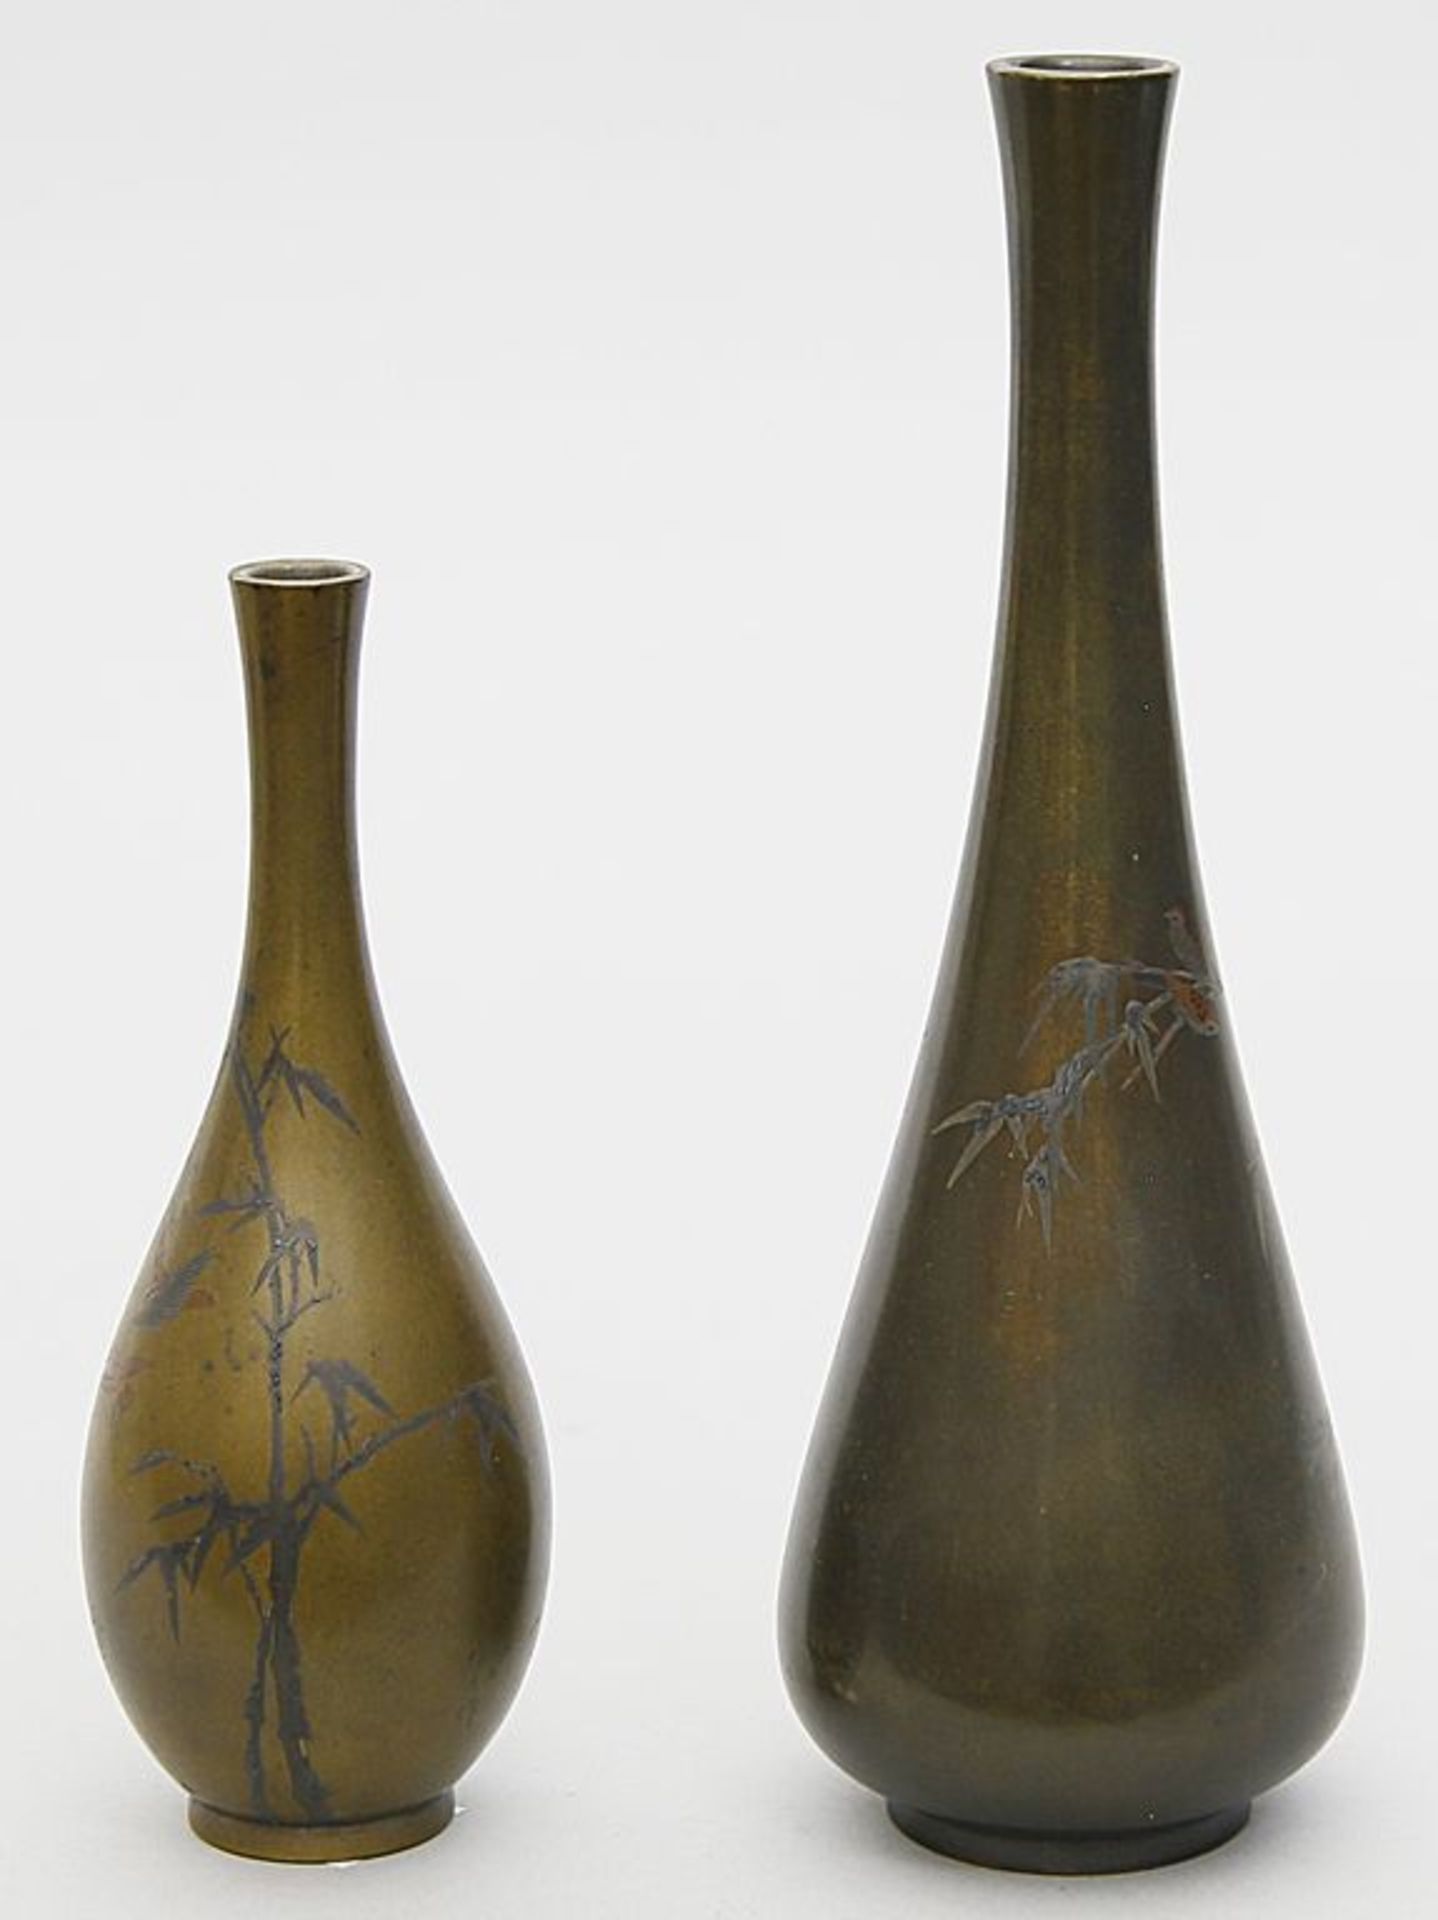 Zwei Vasen. Bronze. Tropfen- bzw. Flaschenform auf rundem Stand. Schauseitig je in Silber und Kupfer